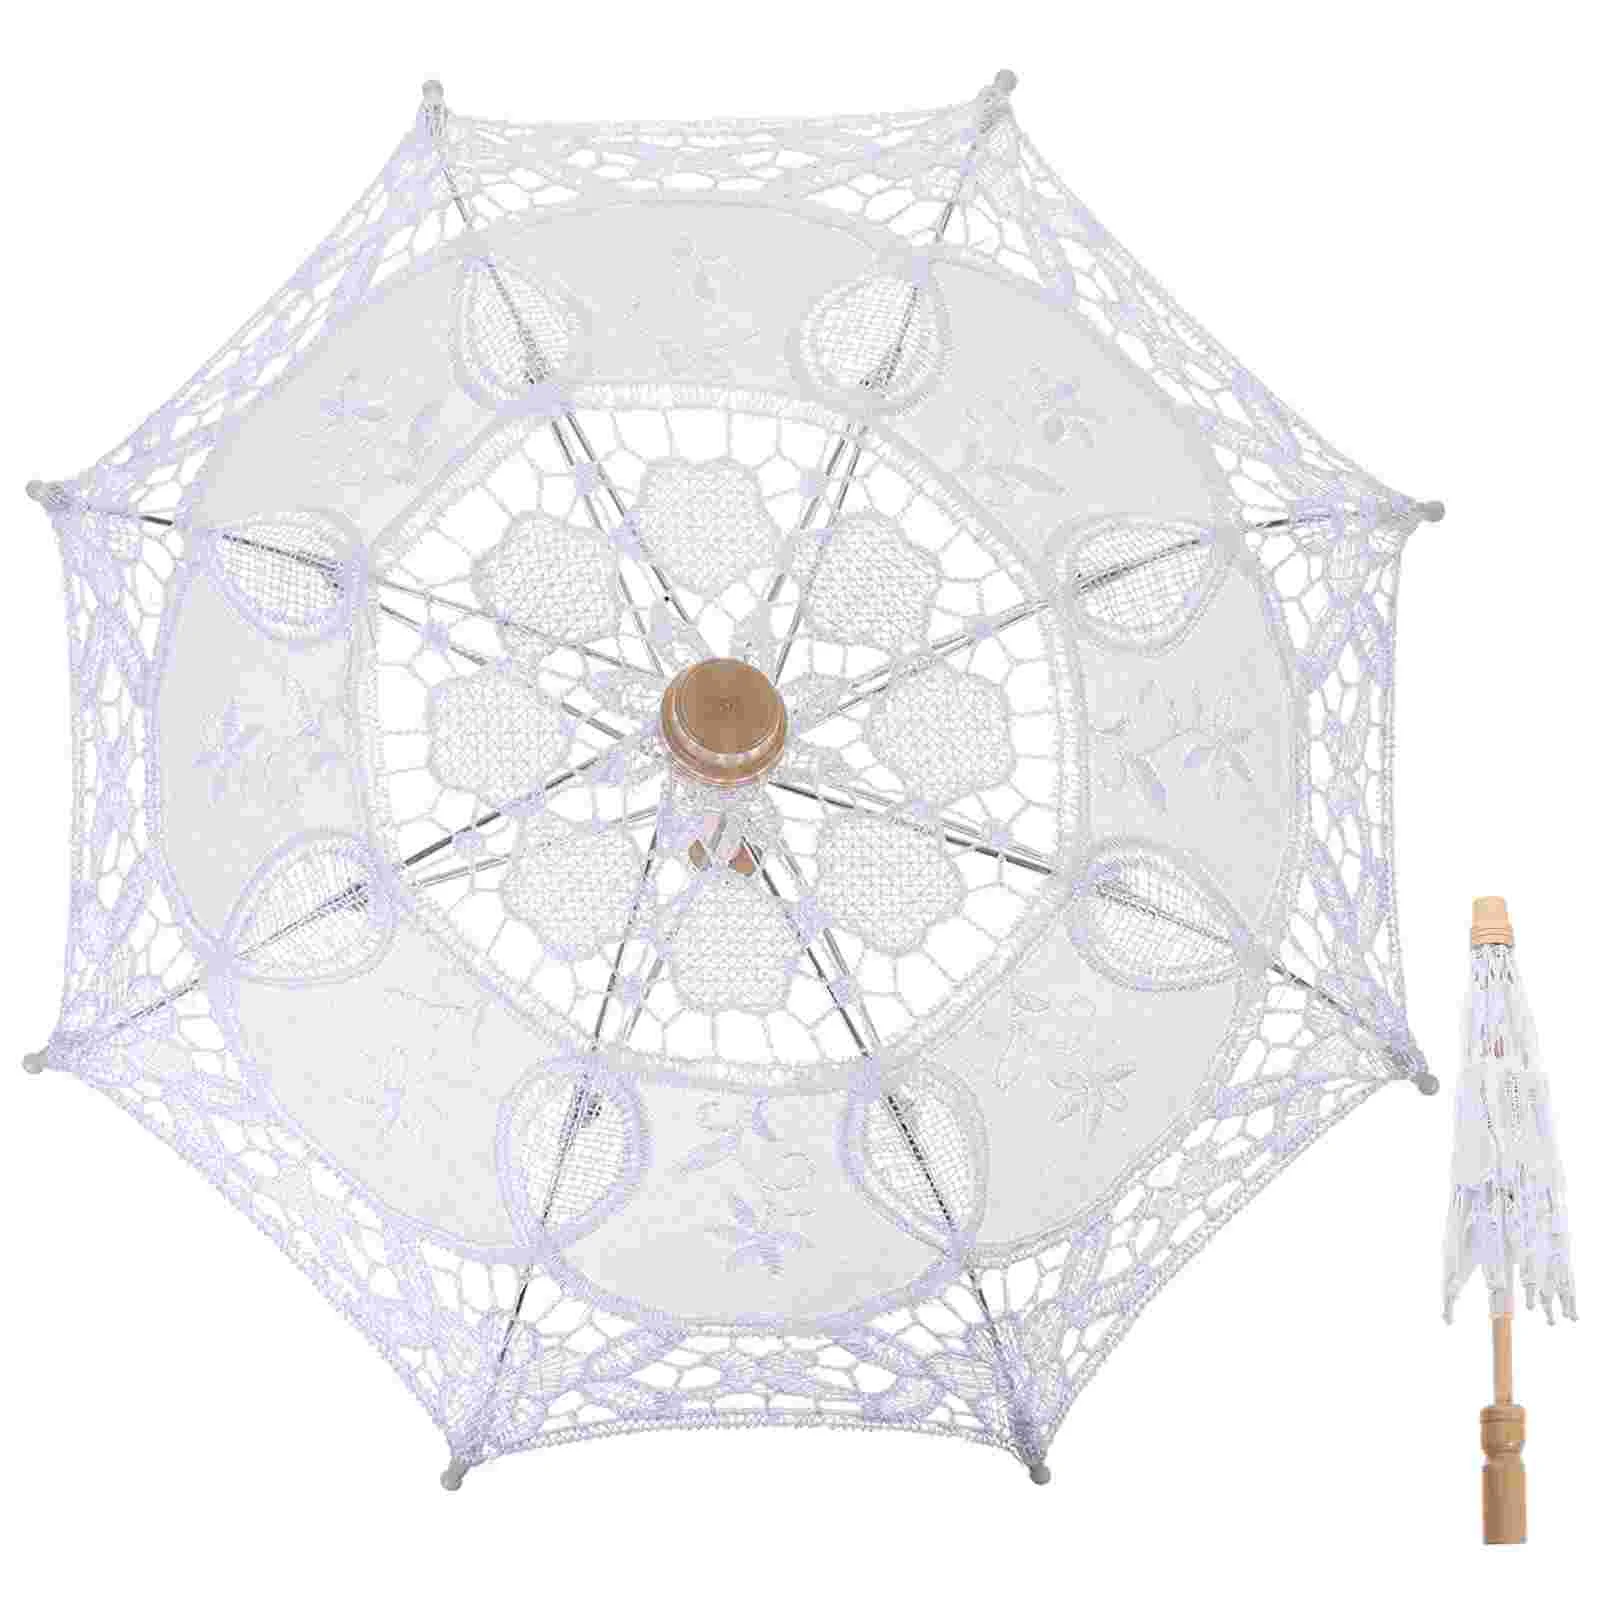 

Зонт из хлопка, зонтик для косплея, реквизит, кружевной зонт, зонтик, деревянный зонтик с белым кружевом, зонтик Miss